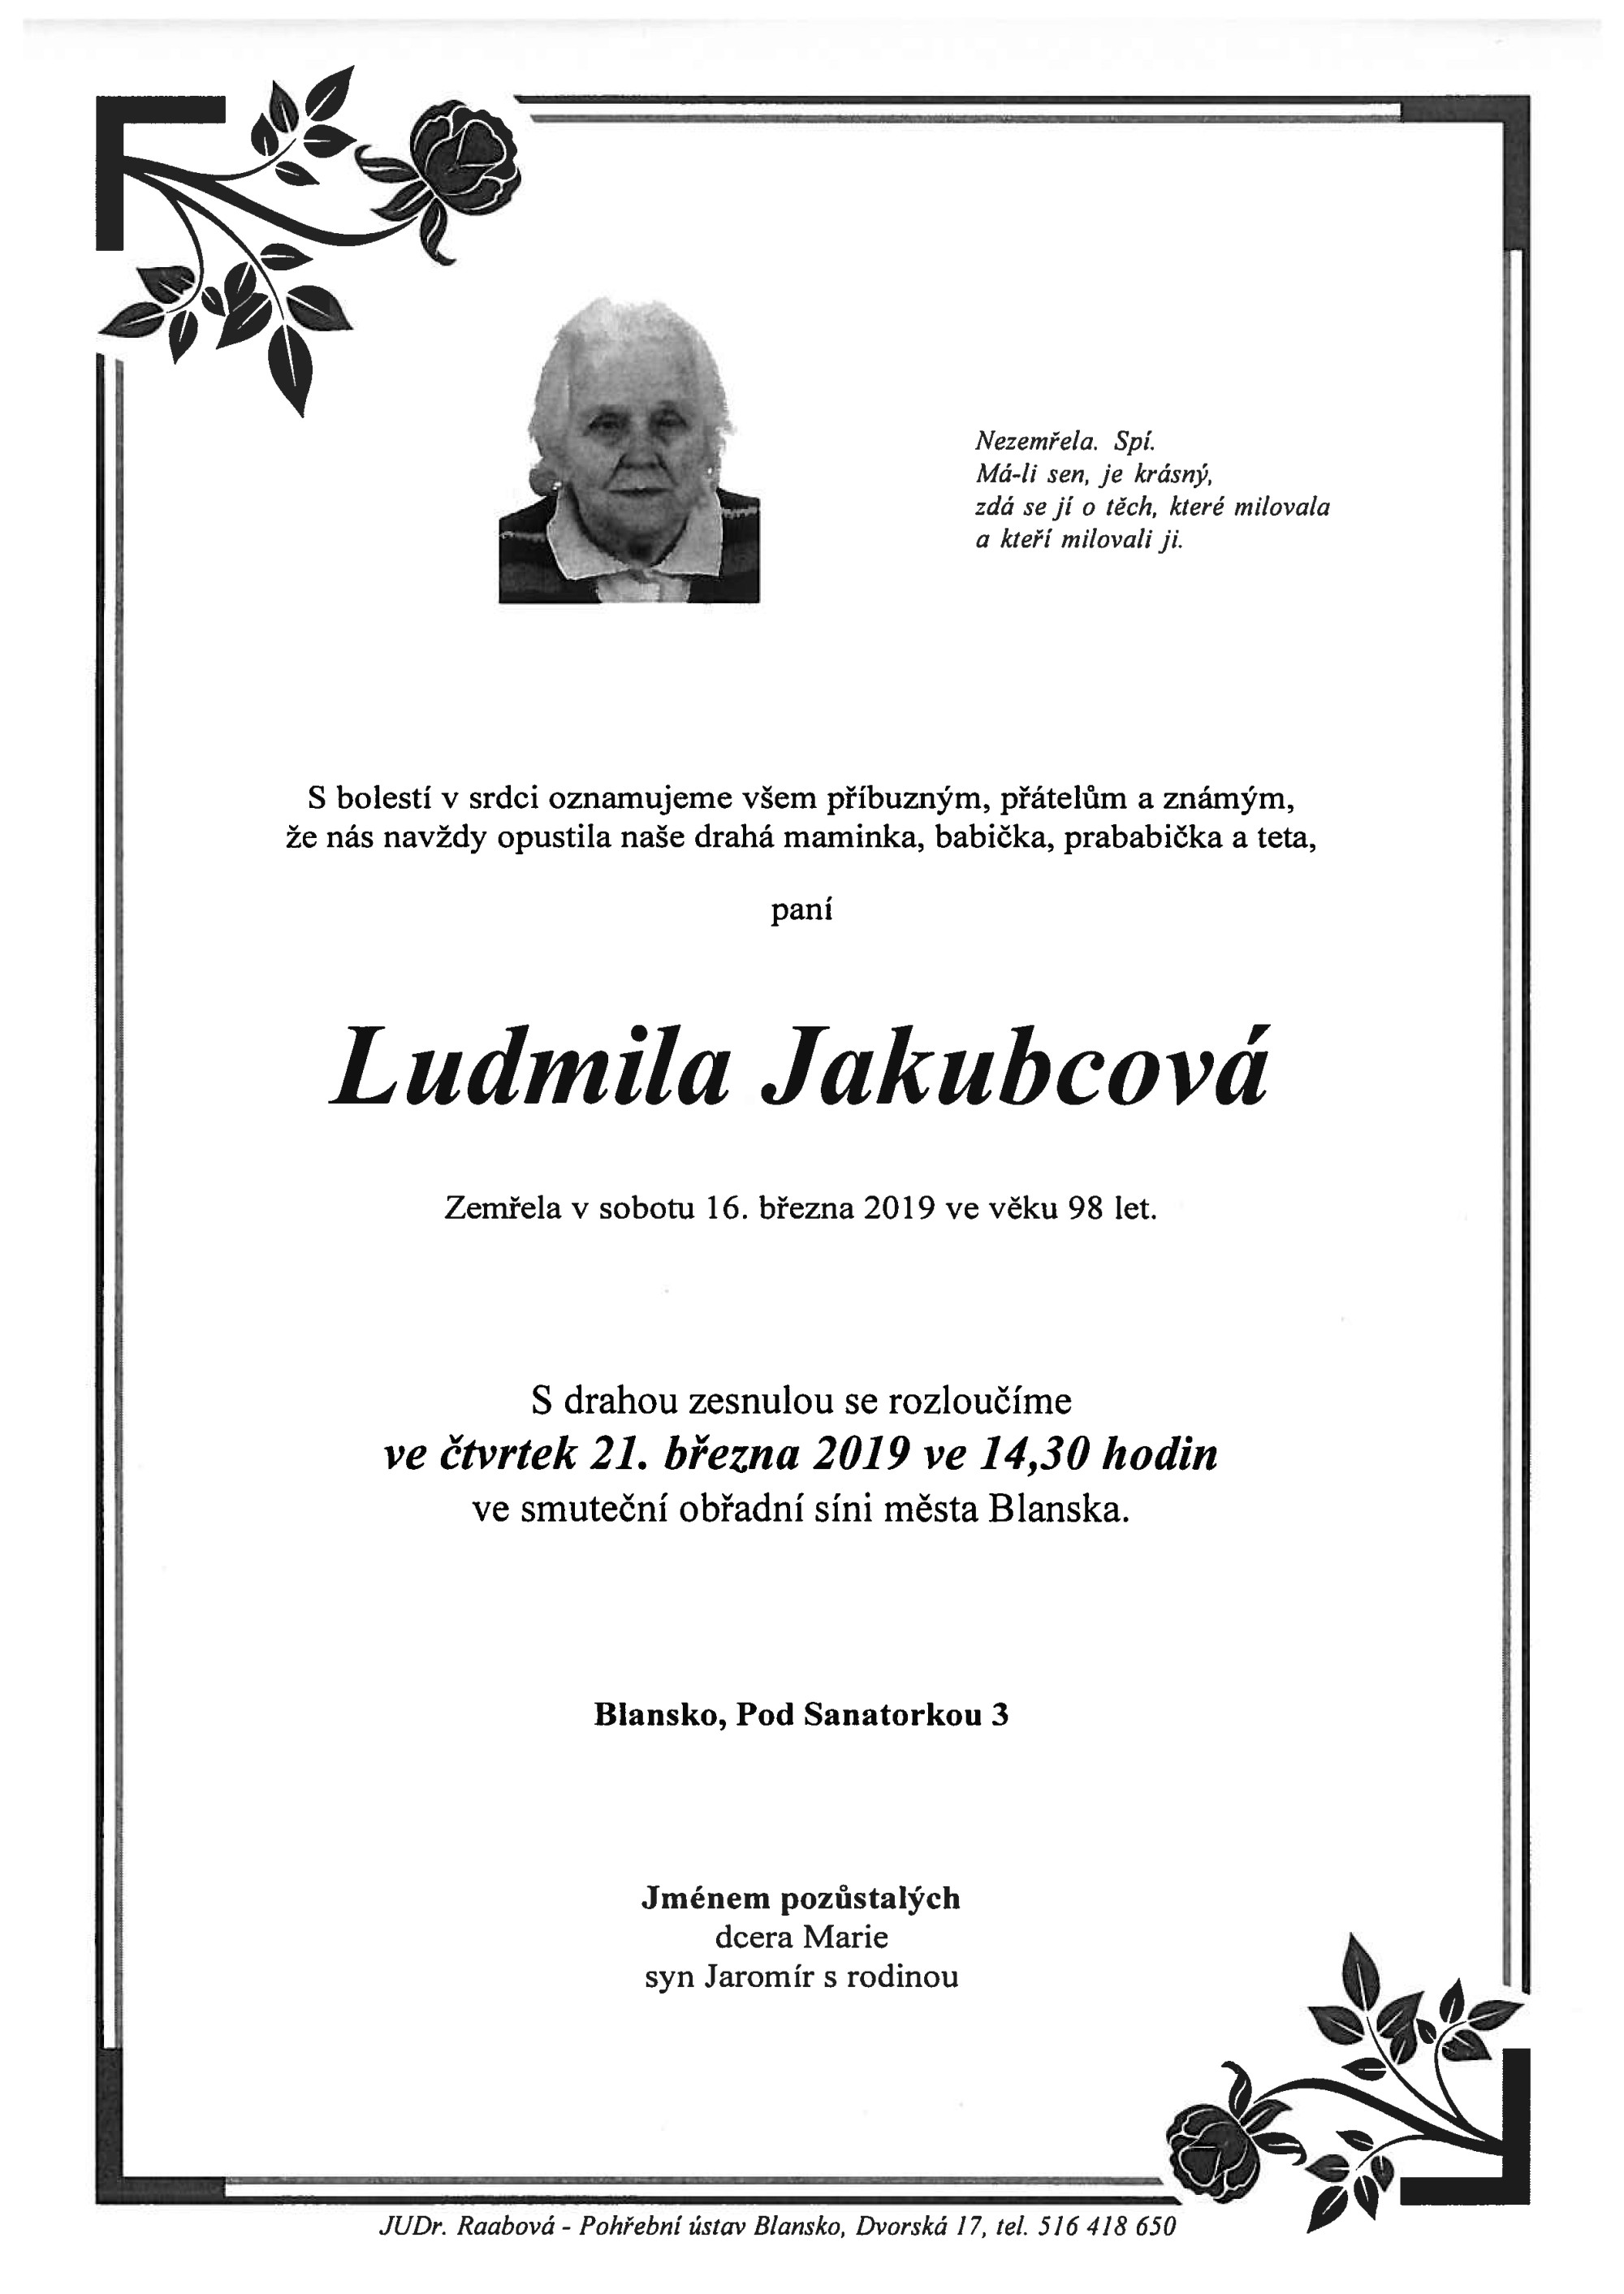 Ludmila Jakubcová